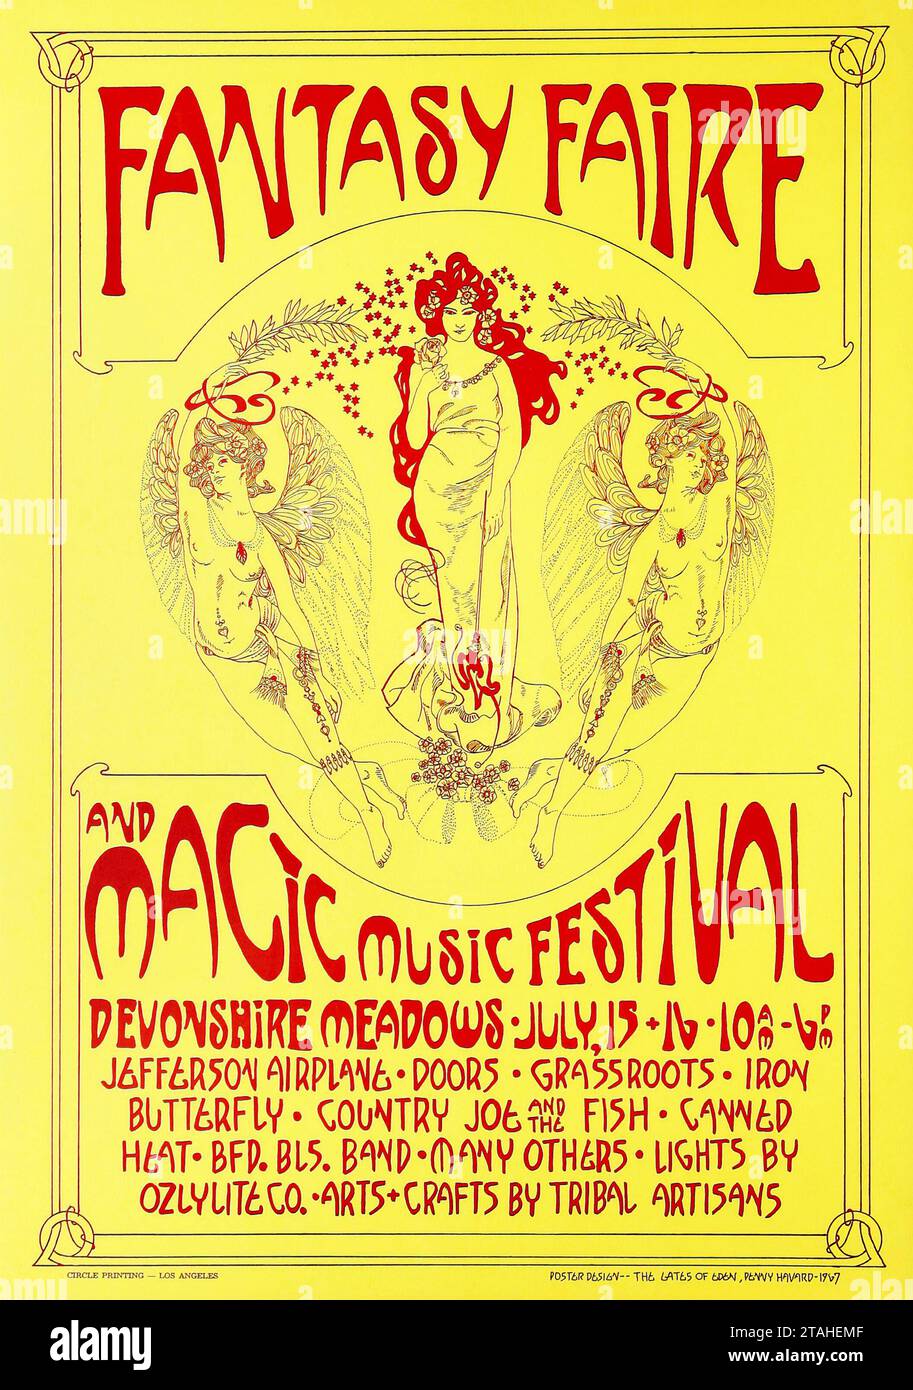 Affiche du Festival Fantasy faire et Magic Music (1967). Devonshire Meadows à Northridge, Californie - Jefferson Airplane, Doors, Grassroots, Country Joe and the Fish, chaleur en conserve et bien plus encore. Banque D'Images